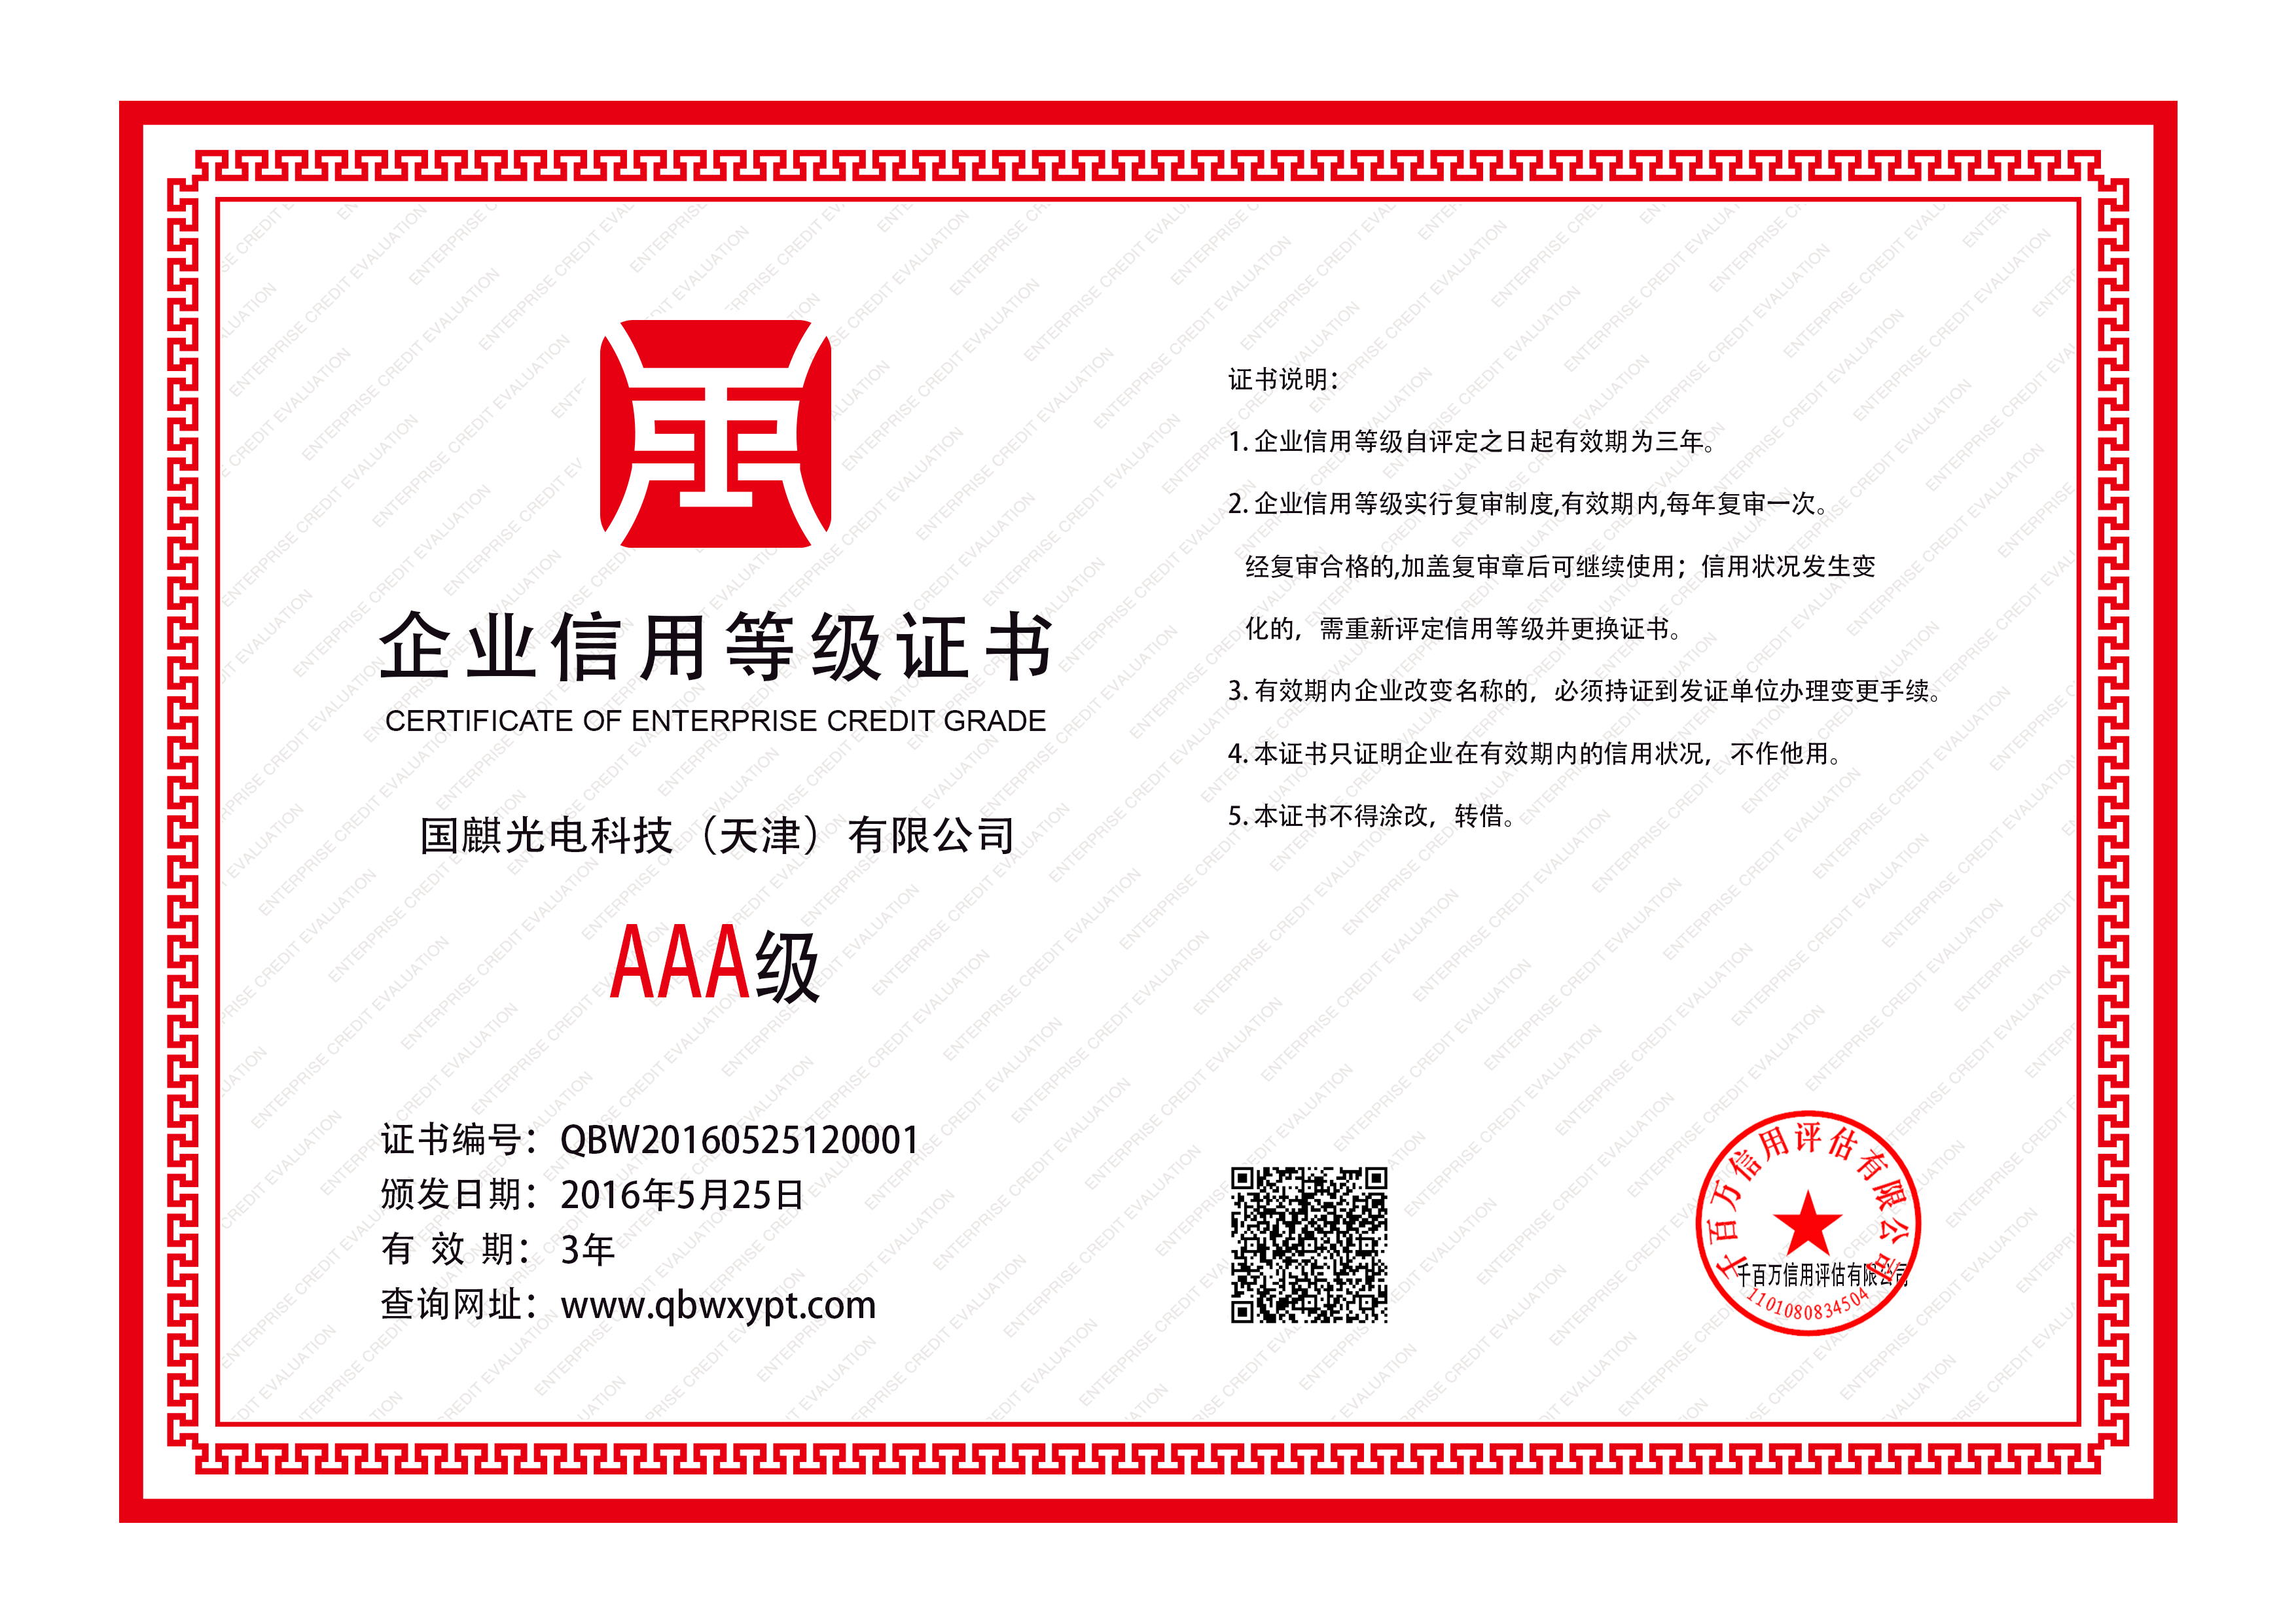 国麒光电科技-天津有限公司-企业信用等级证书